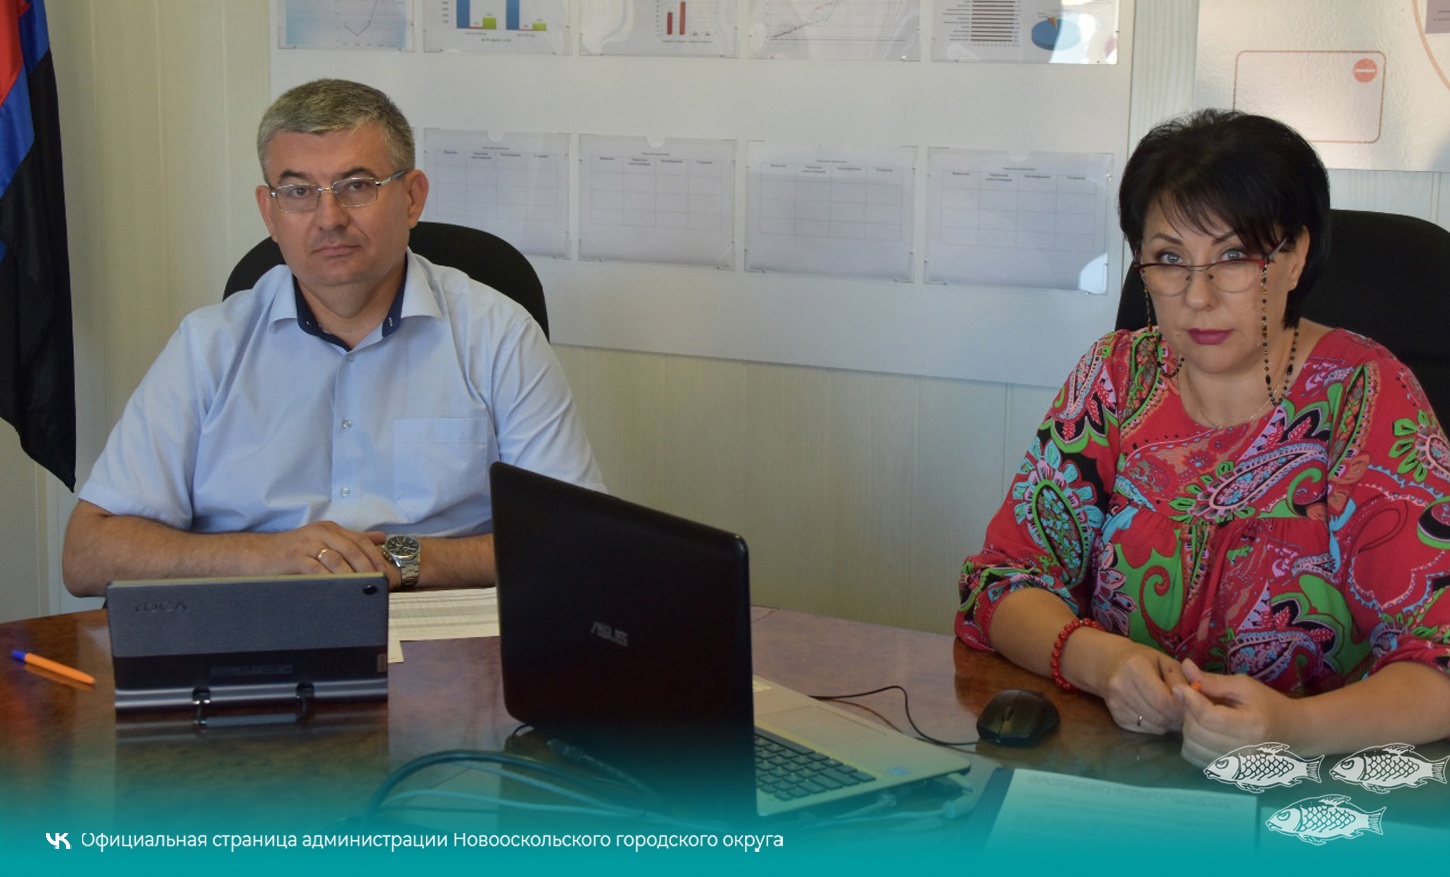 Глава администрации Новооскольского городского округа Андрей Гриднев провёл очередной прямой эфир в социальных сетях.